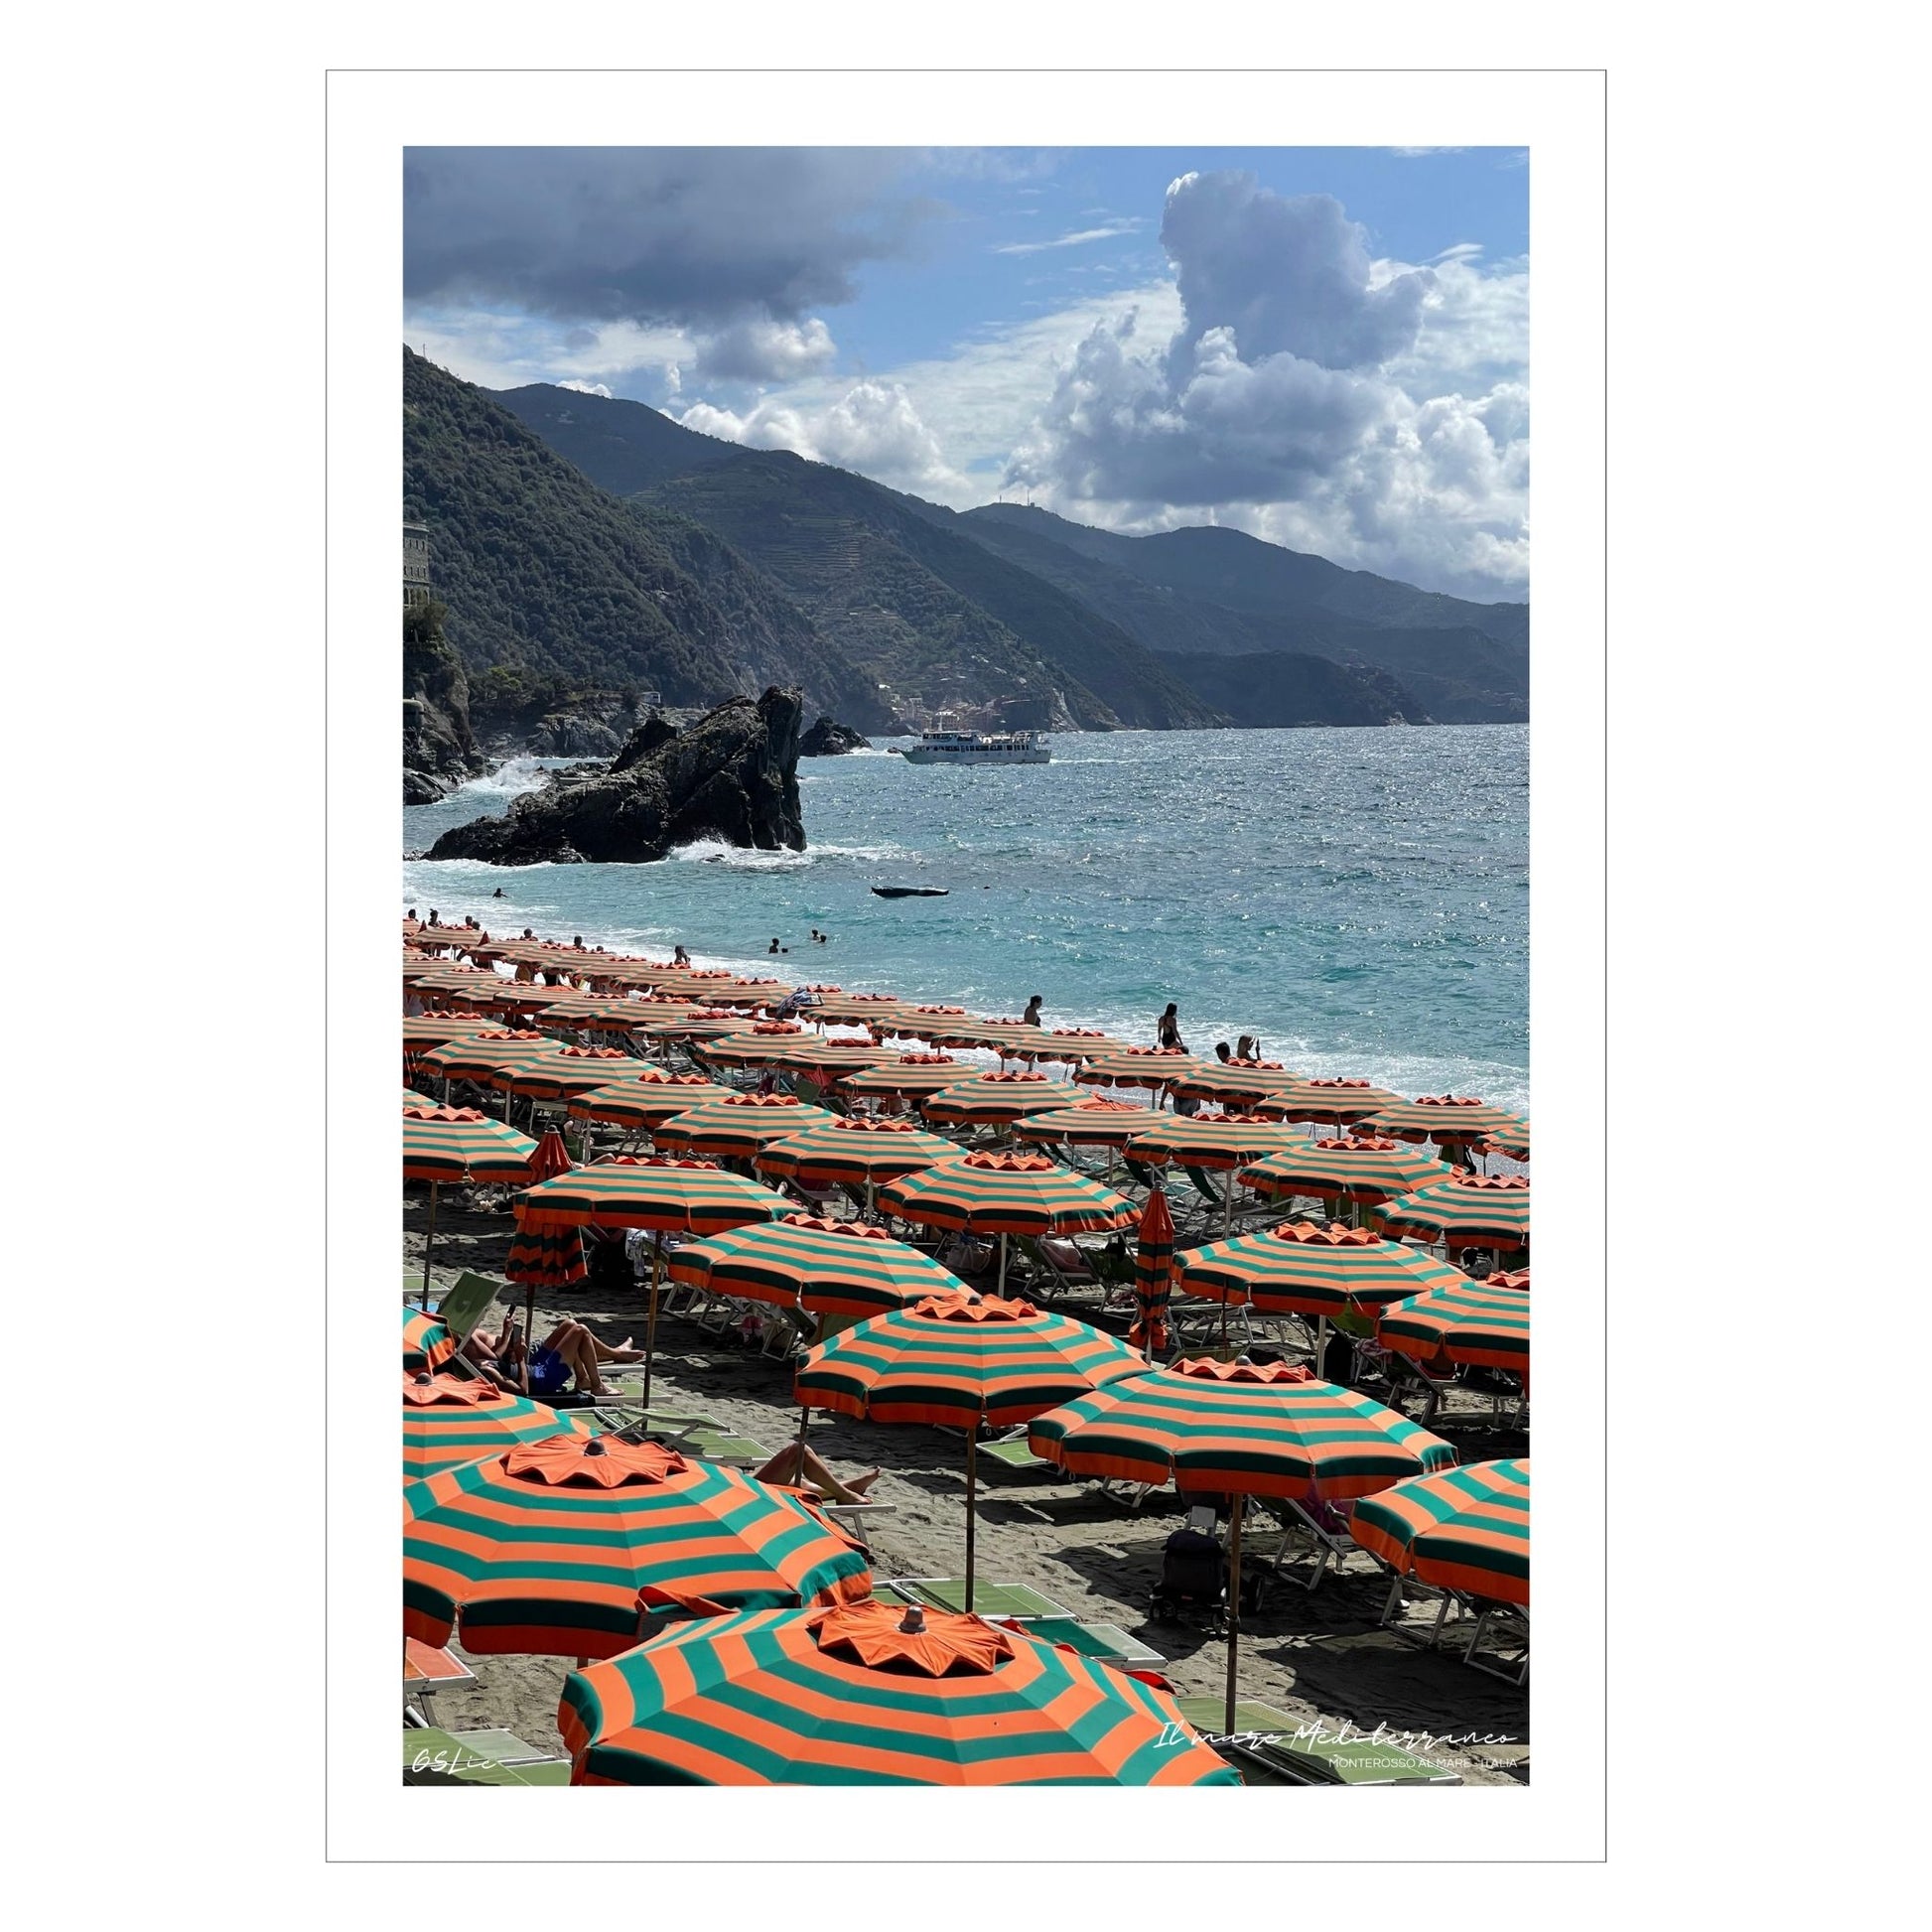 Plakaten viser den fine sandstranden ved Monterosso al Mare. De oransje og grønne parasollene som er "varemerke" for stranden, er systematisk satt opp i fem rekker. Himmelen er blå med noen skyer. Klippelandskapet mellom byenes går ned i havet til venstre på bildet.